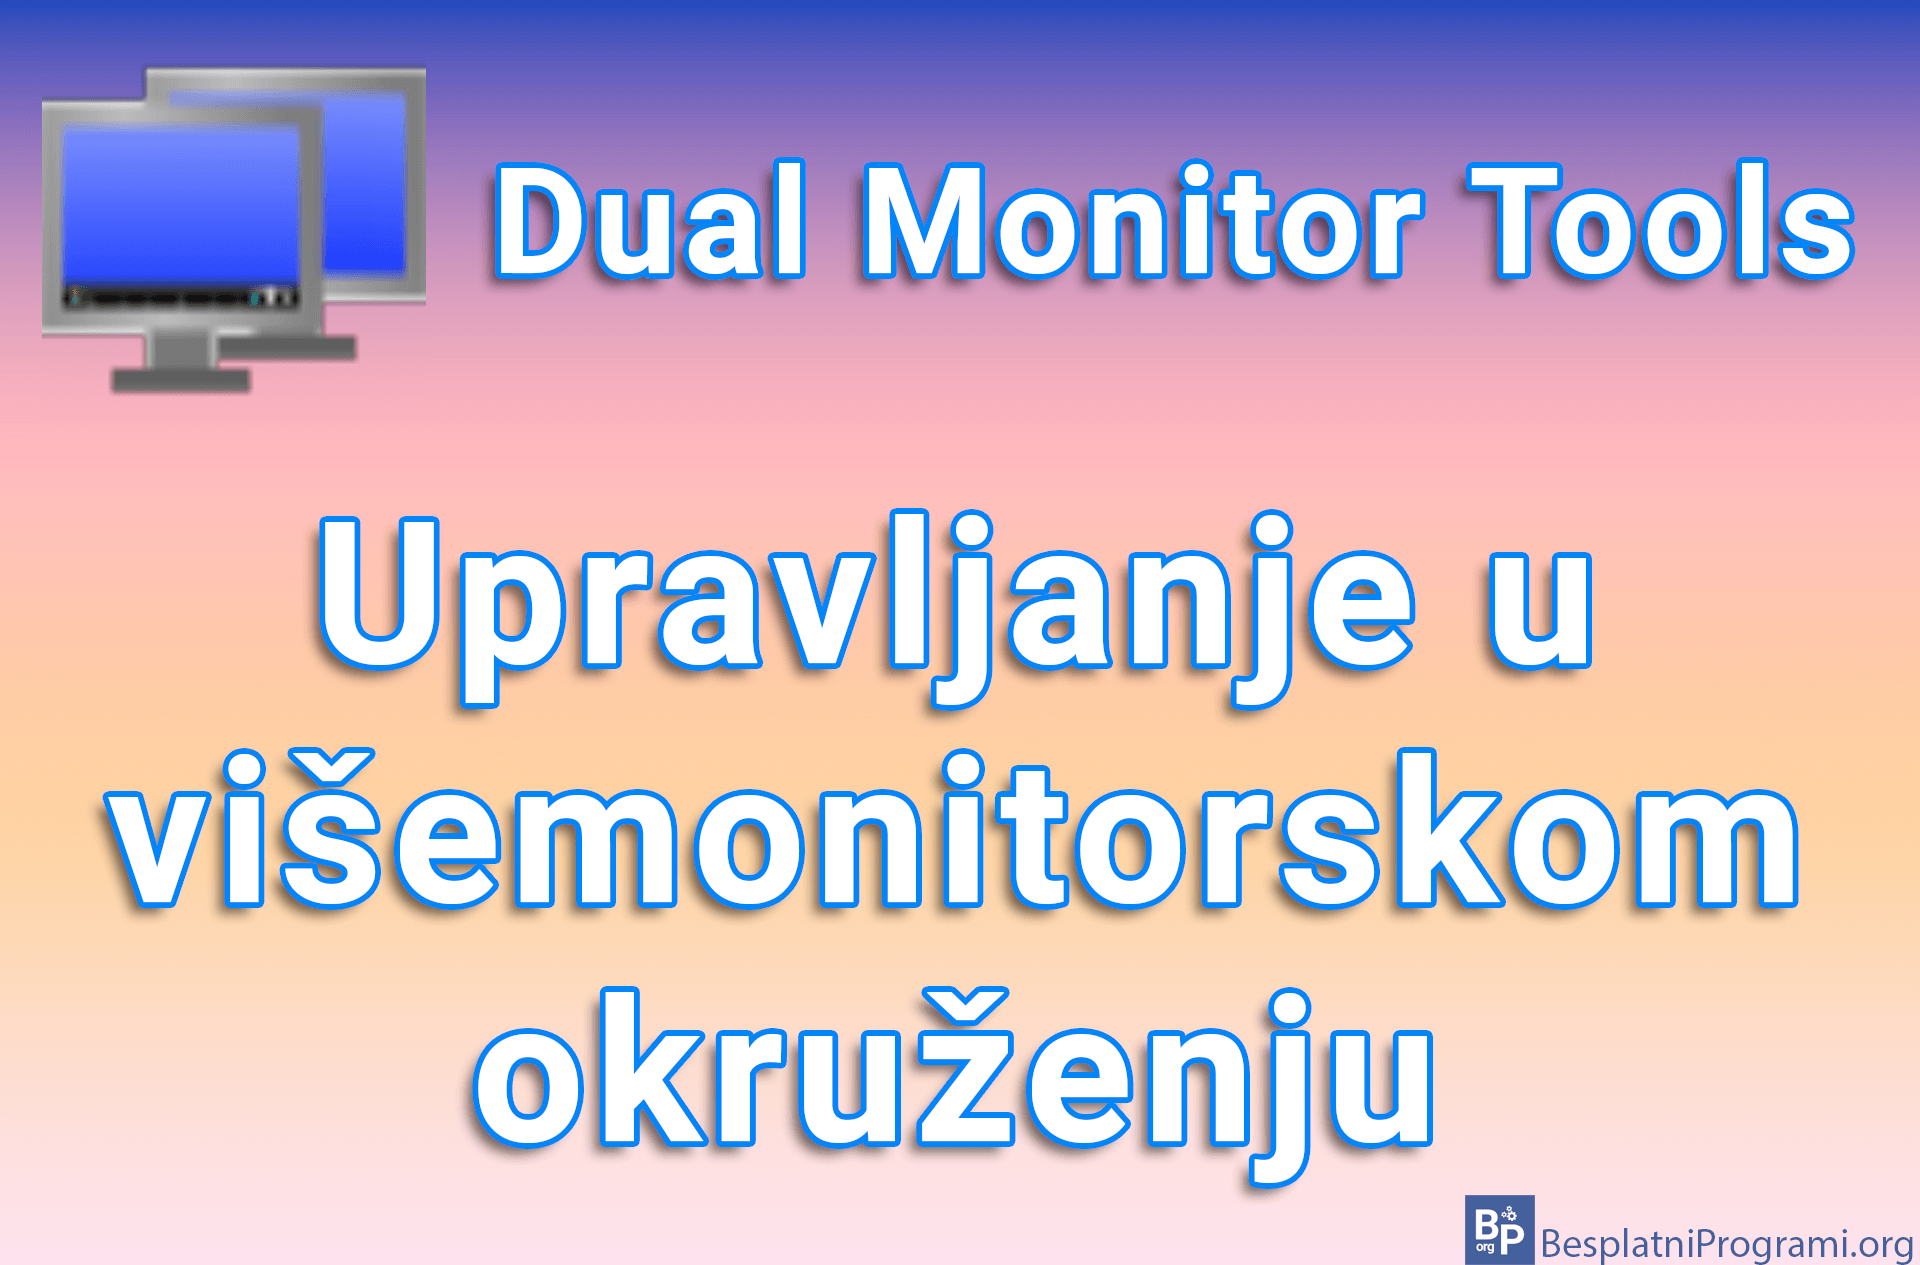 Dual Monitor Tools – Upravljanje u višemonitorskom okruženju